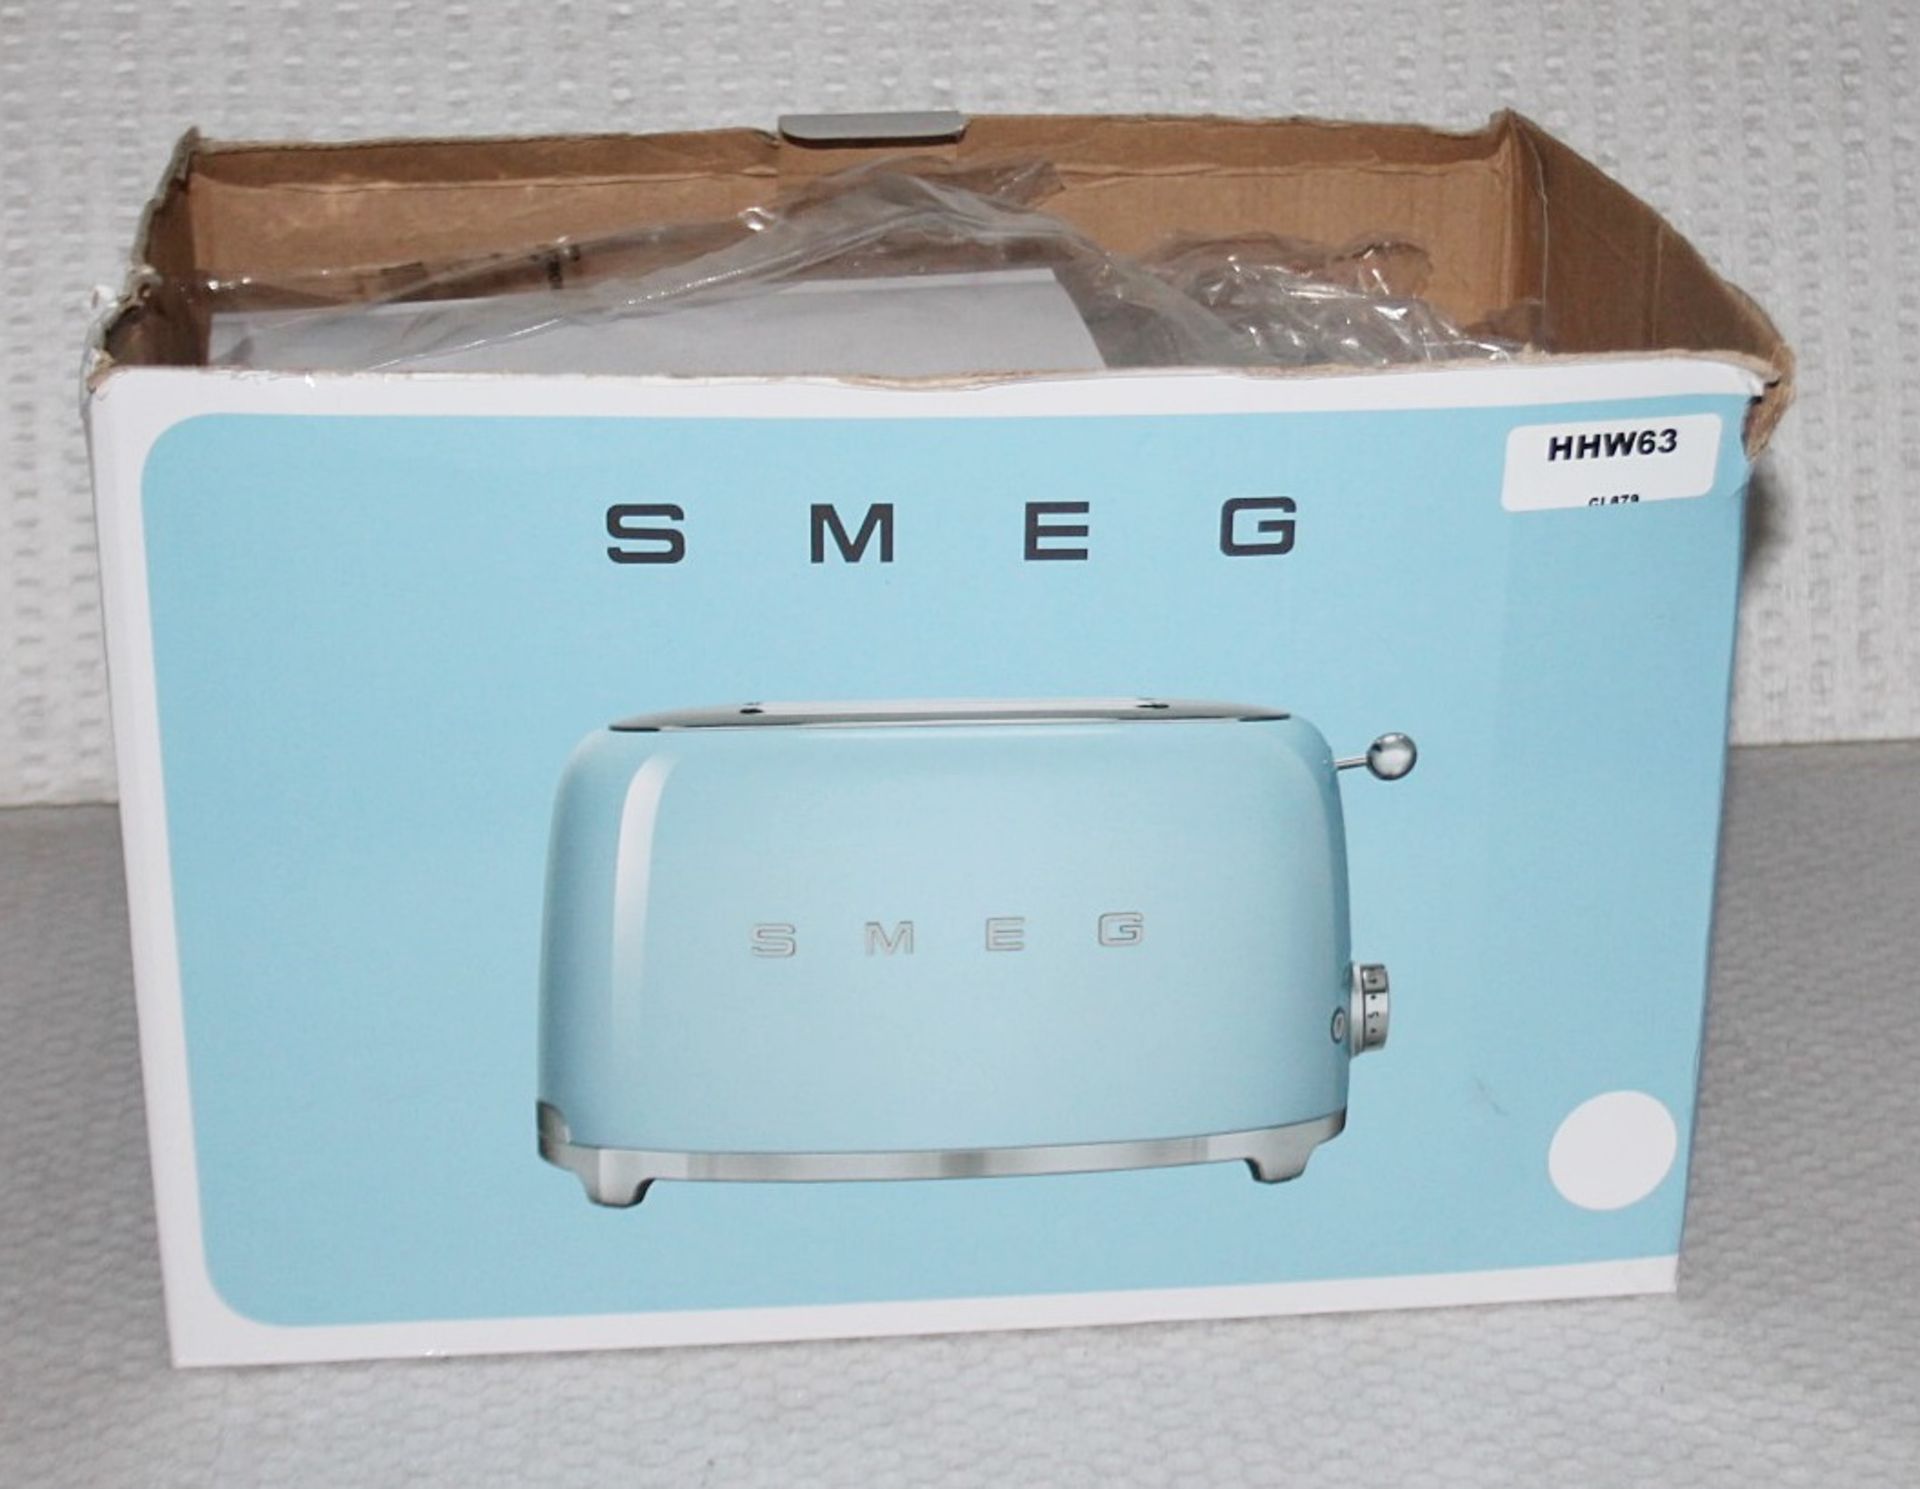 1 x SMEG Retro-style 2-Slot Toaster In White - Original Price £139.95 - Image 5 of 7